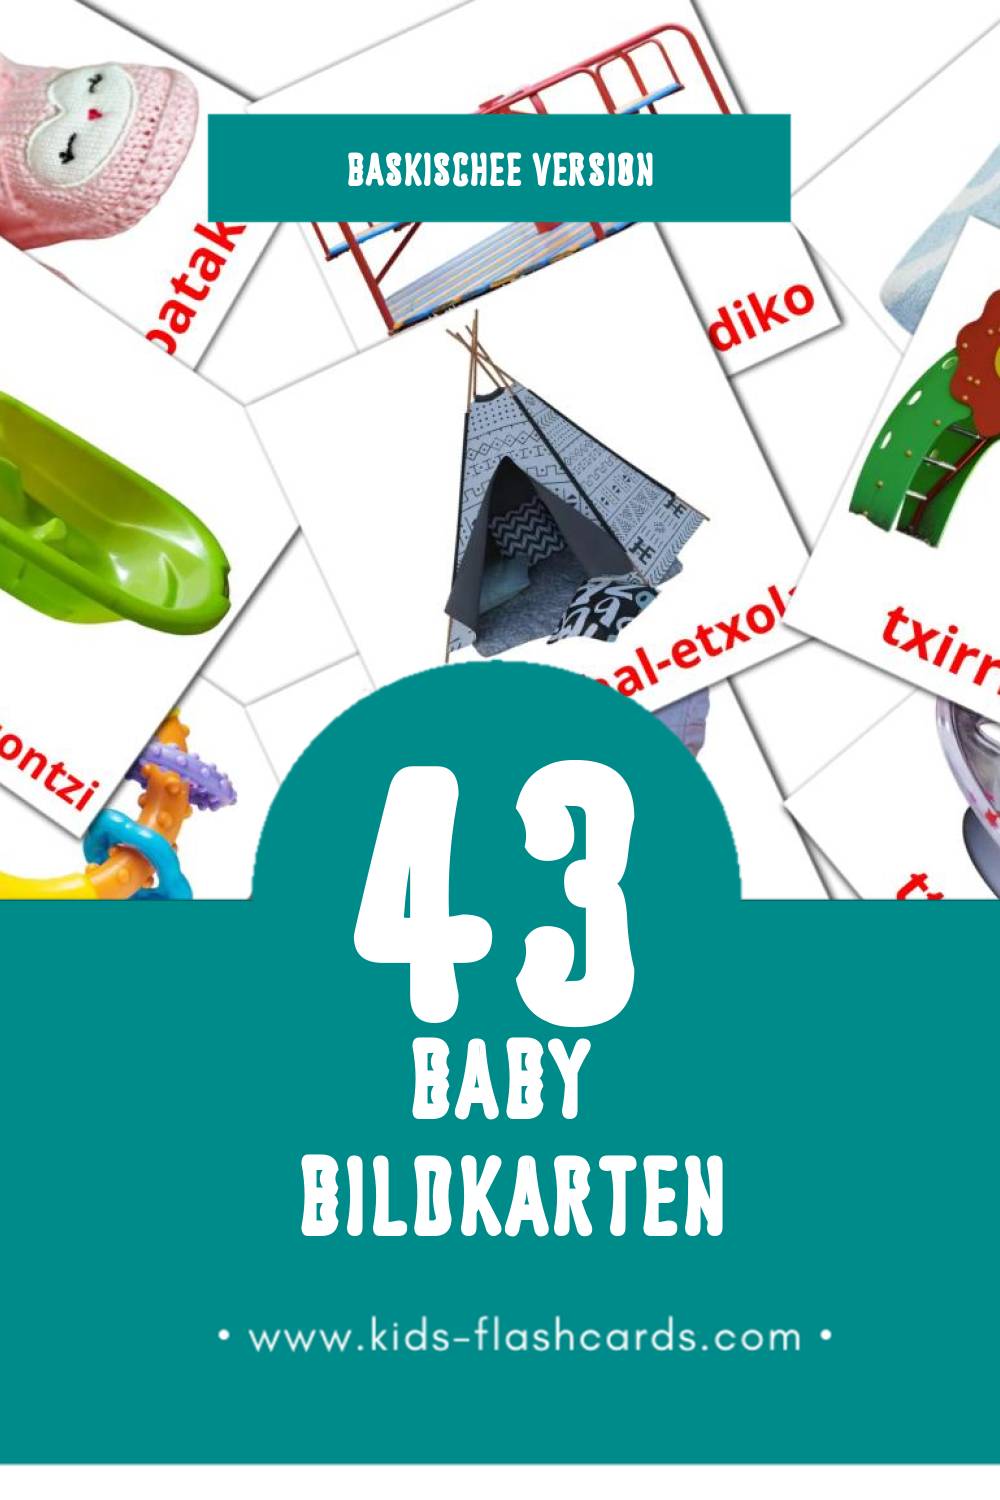 Visual Haurtxo / Umetxo Flashcards für Kleinkinder (43 Karten in Baskische)